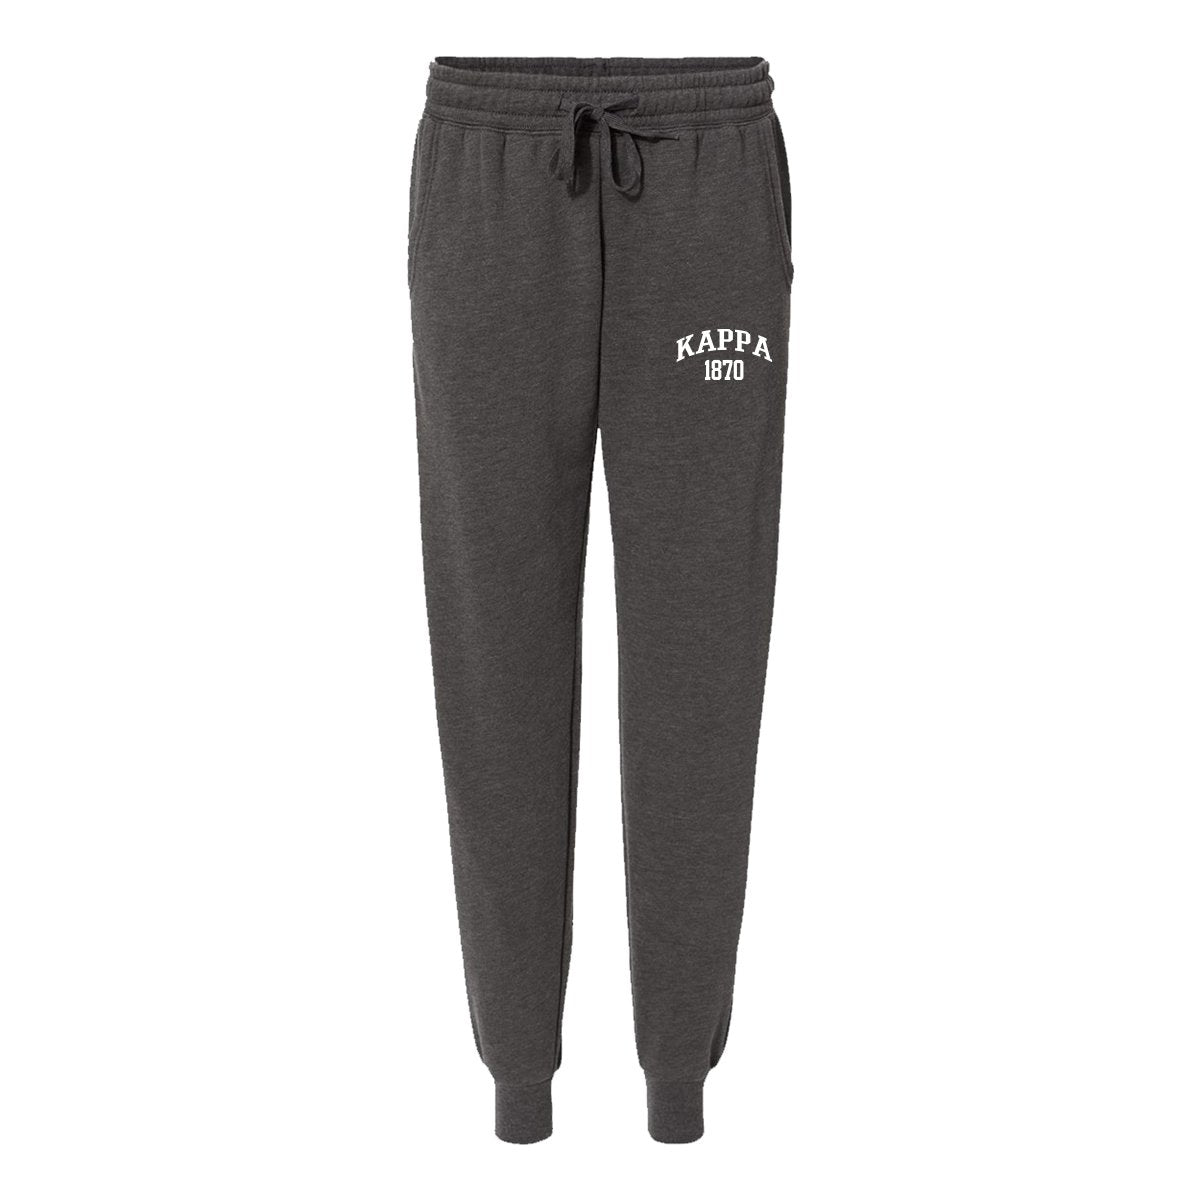 Kappa Embroidered Collegiate Joggers | Kappa Kappa Gamma | Pants > Sweatpants